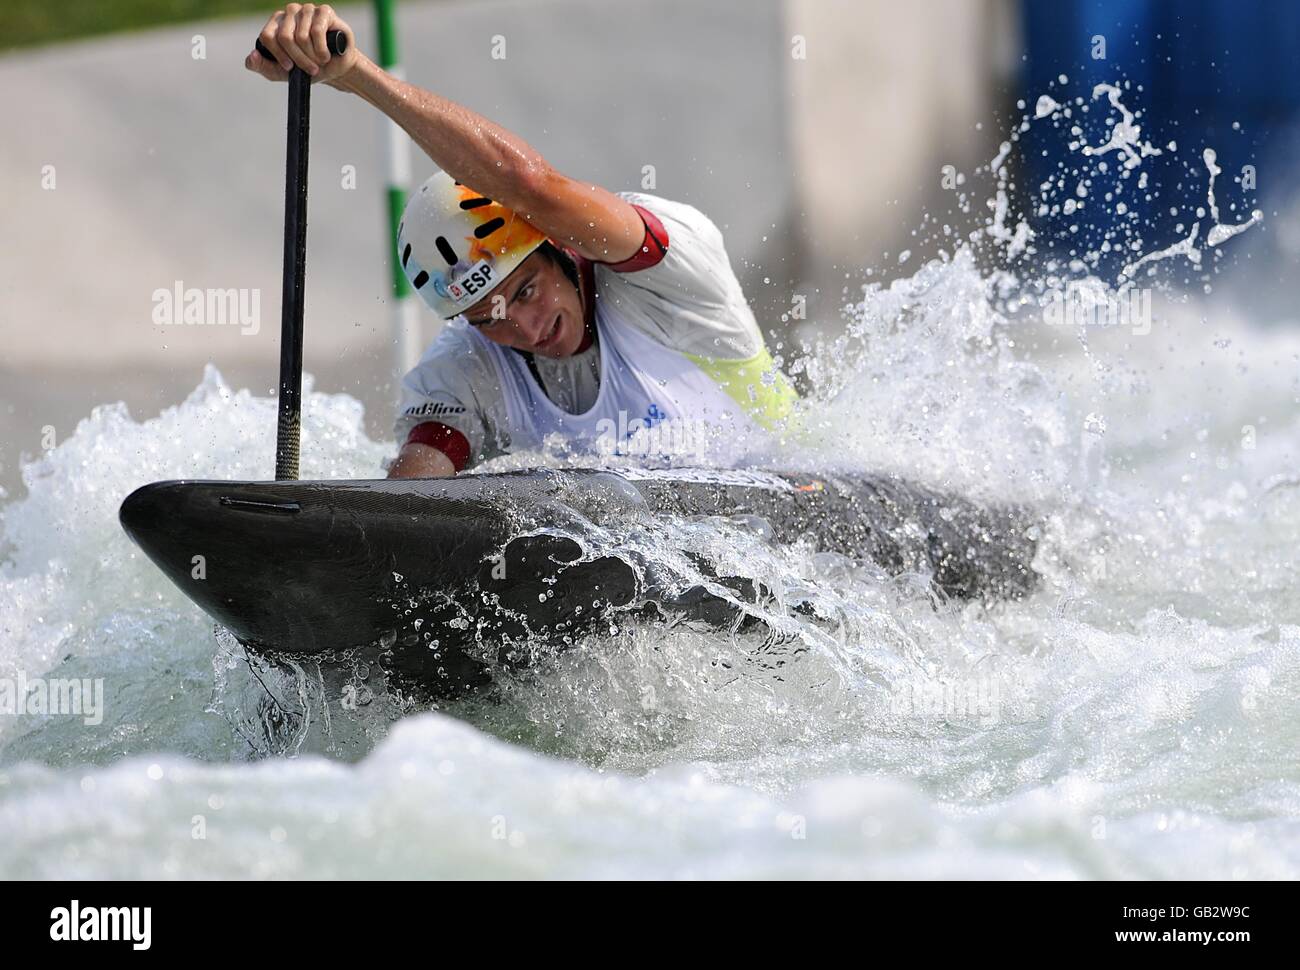 Ander Elosegui, en Espagne, est en compétition dans le Canoe Single (C1), un demi-fsinal masculin, au parc d'aviron-canoë Shunji à Beijin, en Chine, lors des Jeux Olympiques de Beijing en 2008. Banque D'Images